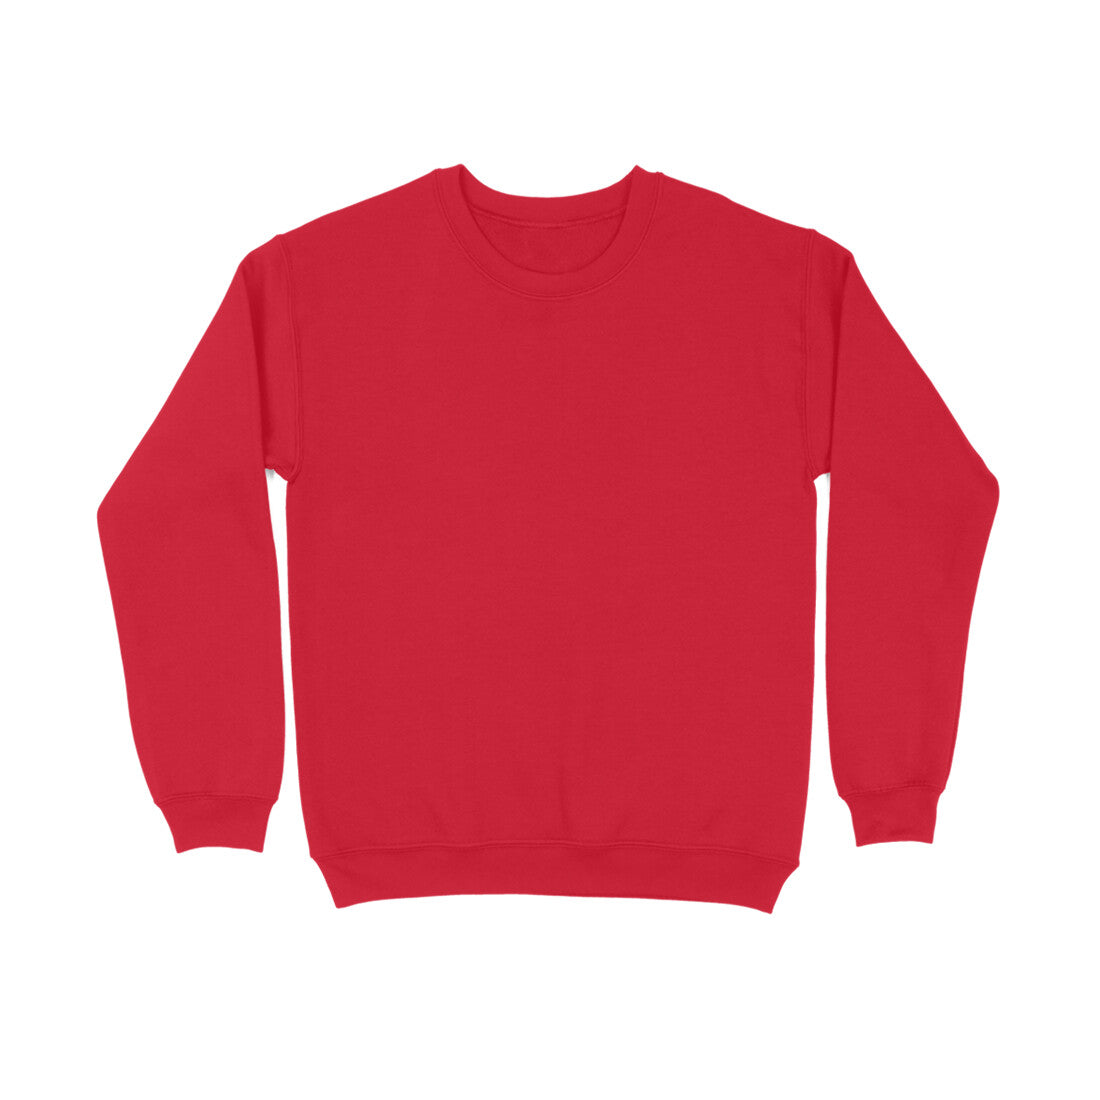 Men's Red Sweatshirt